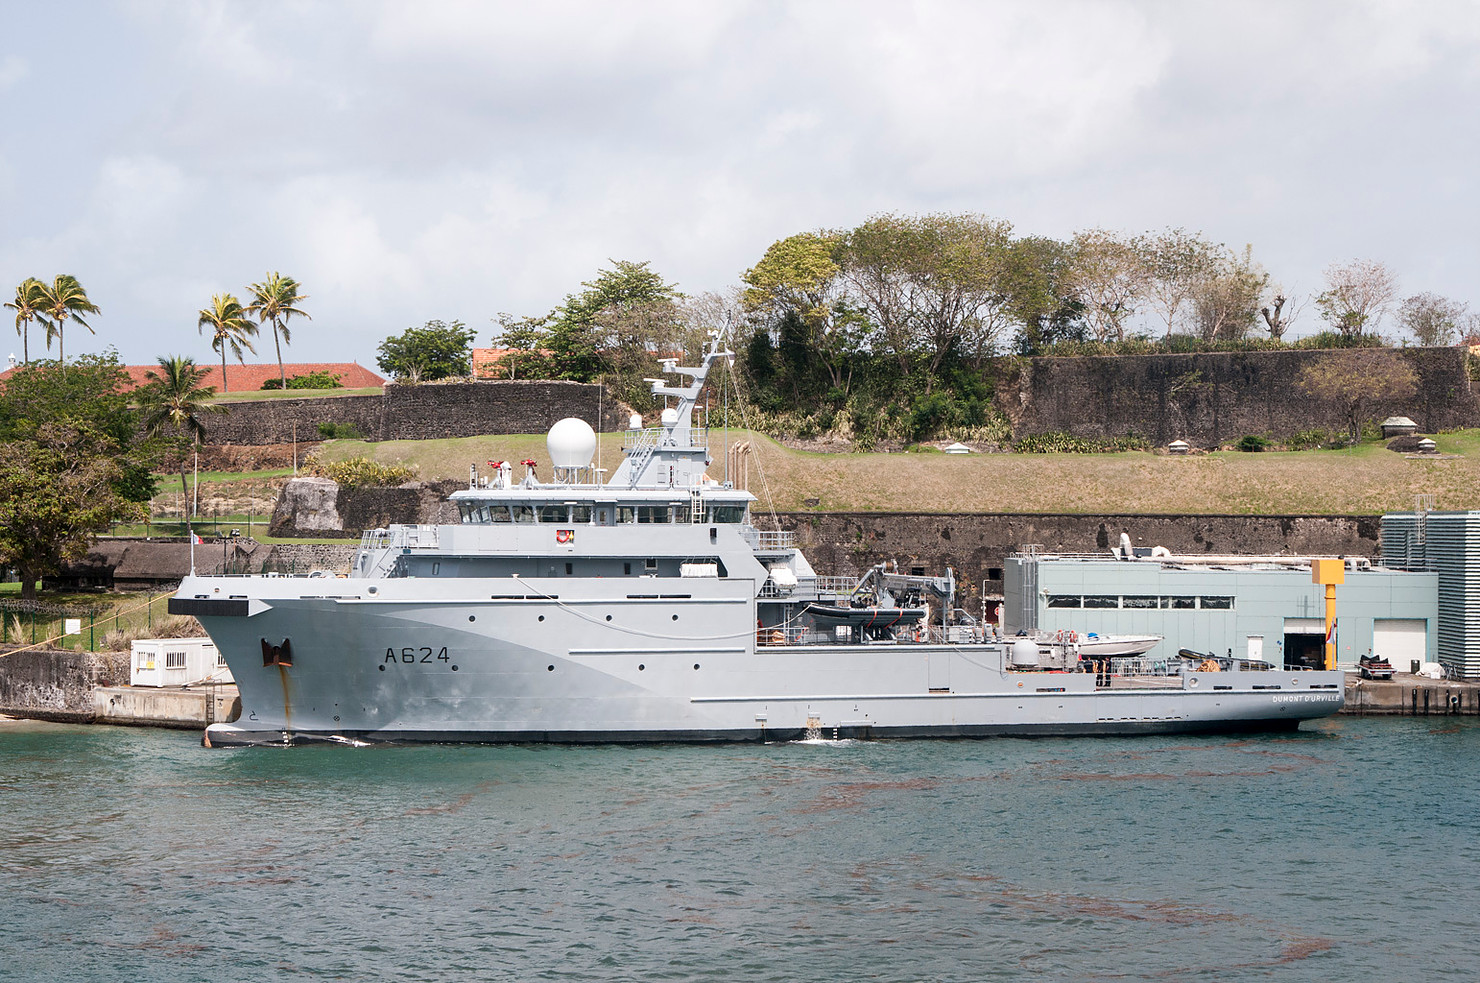 Sécurité maritime: Le Dumont d’Urville, désormais positionné dans la base navale de Fort-de-France